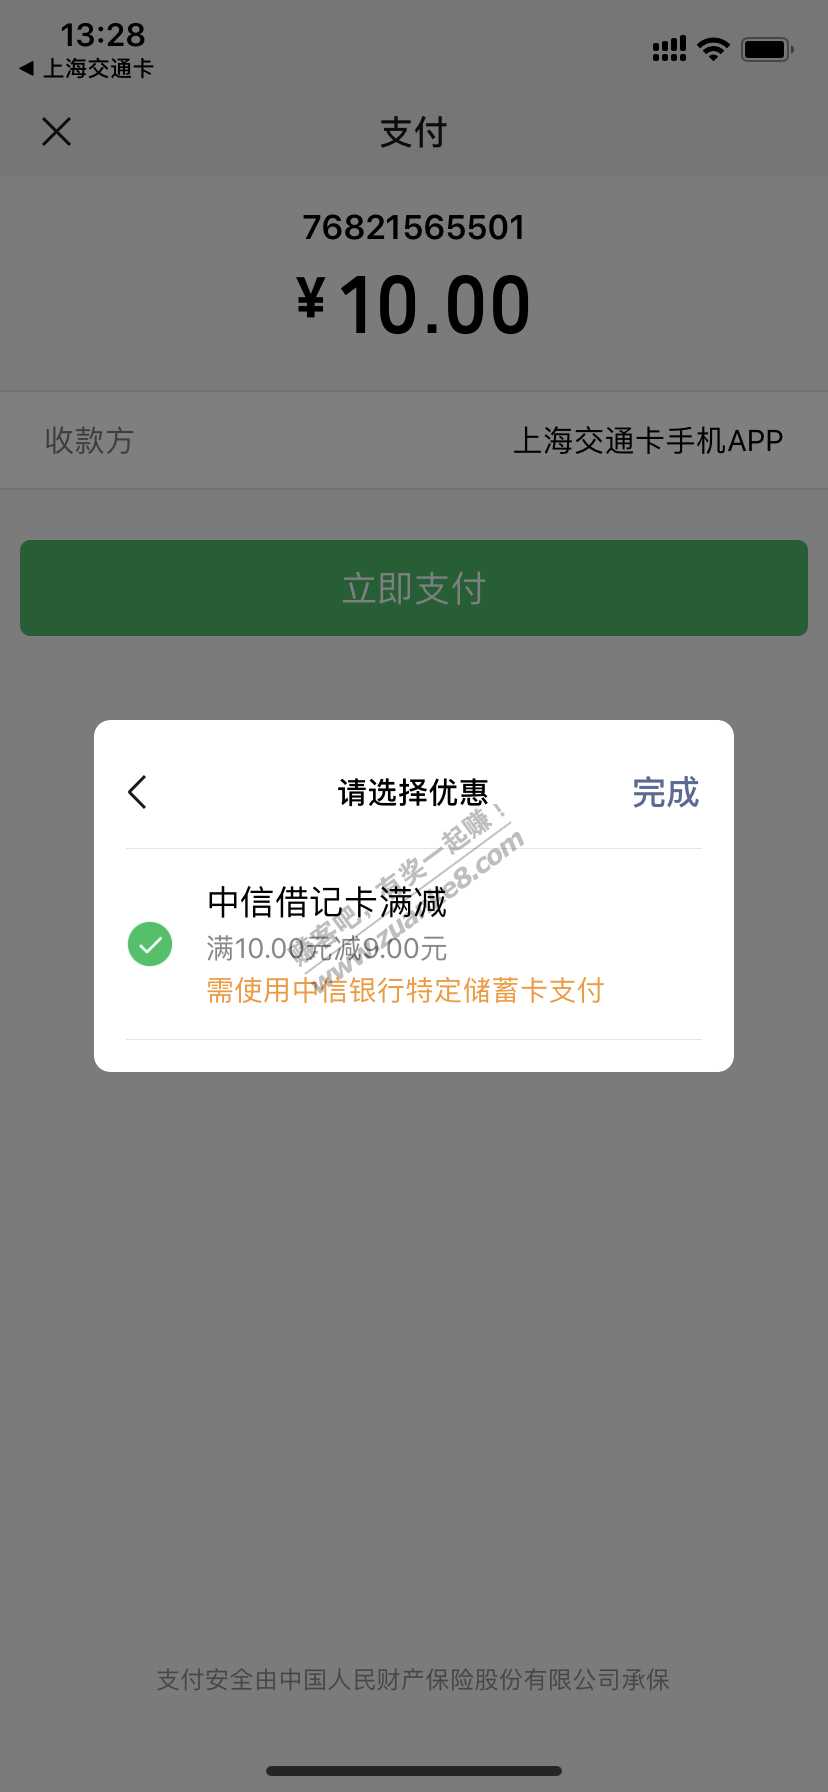 上海中信jjk交通卡10-9-惠小助(52huixz.com)